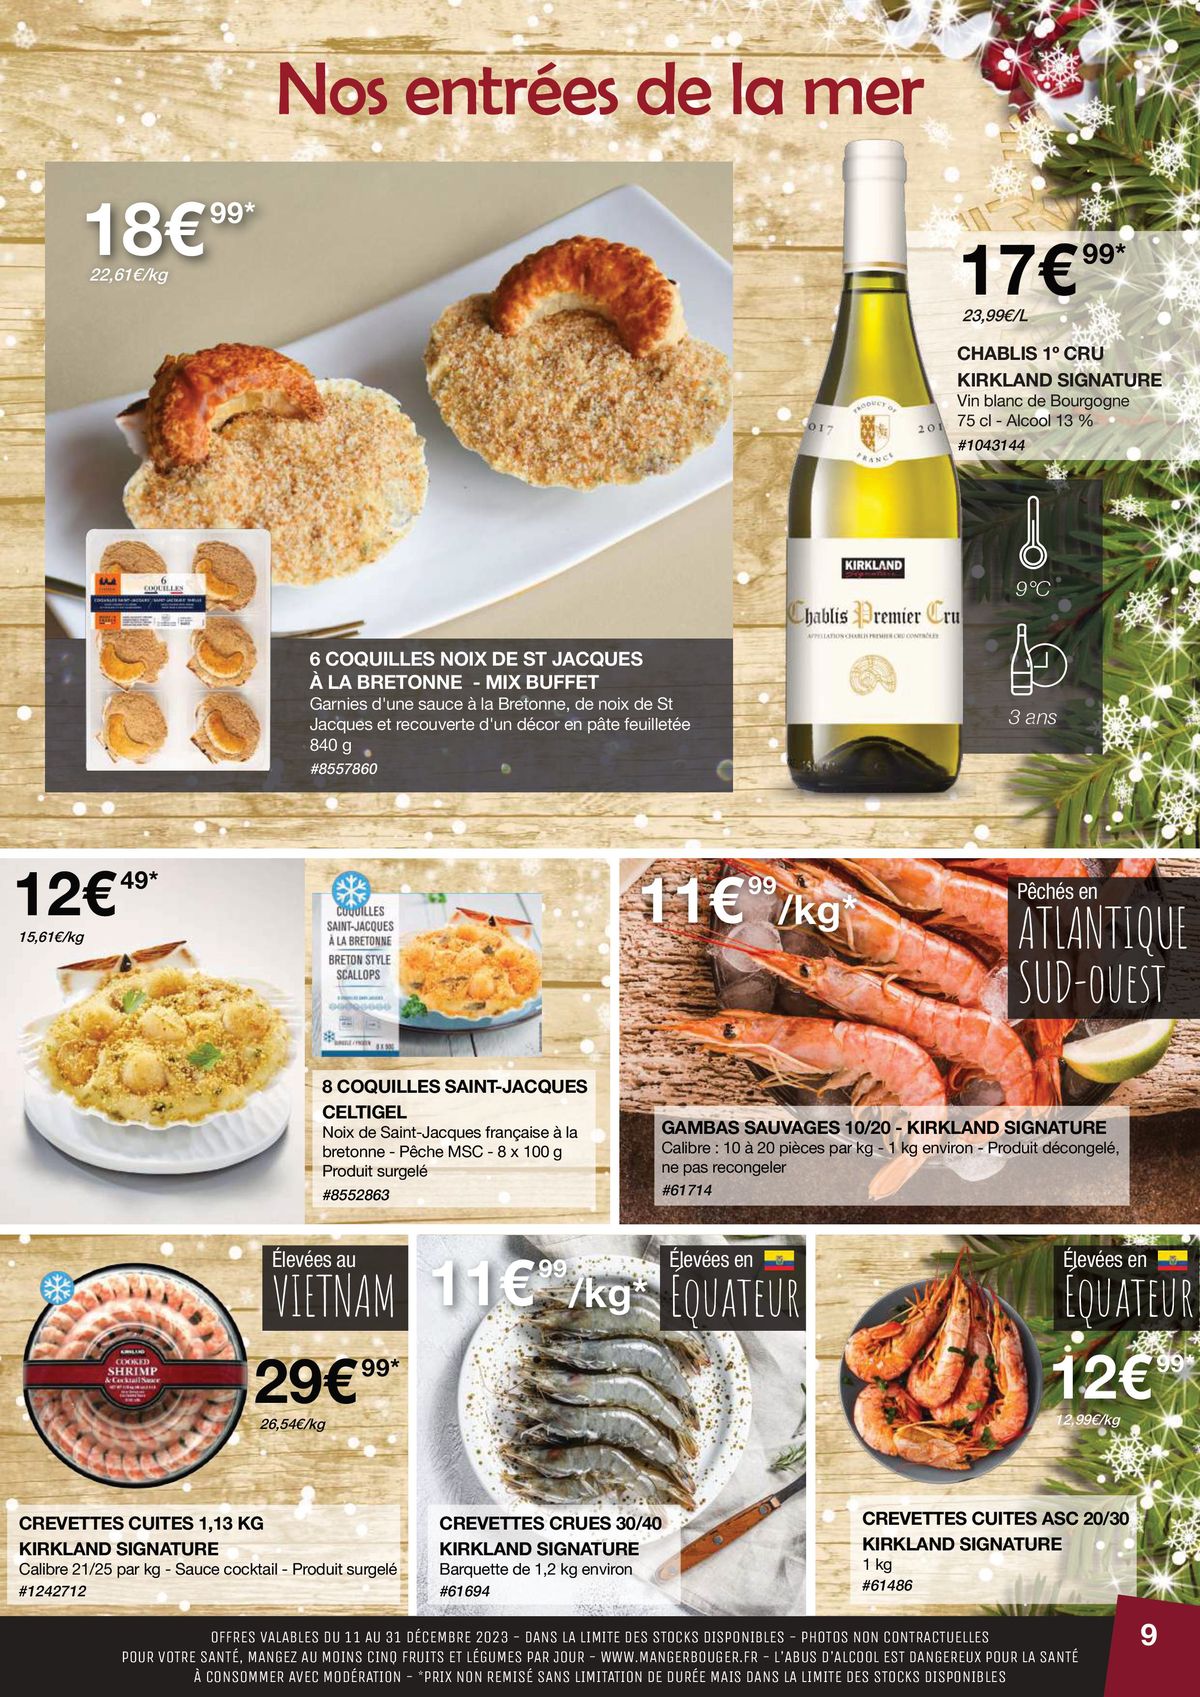 Catalogue Sélection noel, repas de fête, page 00009